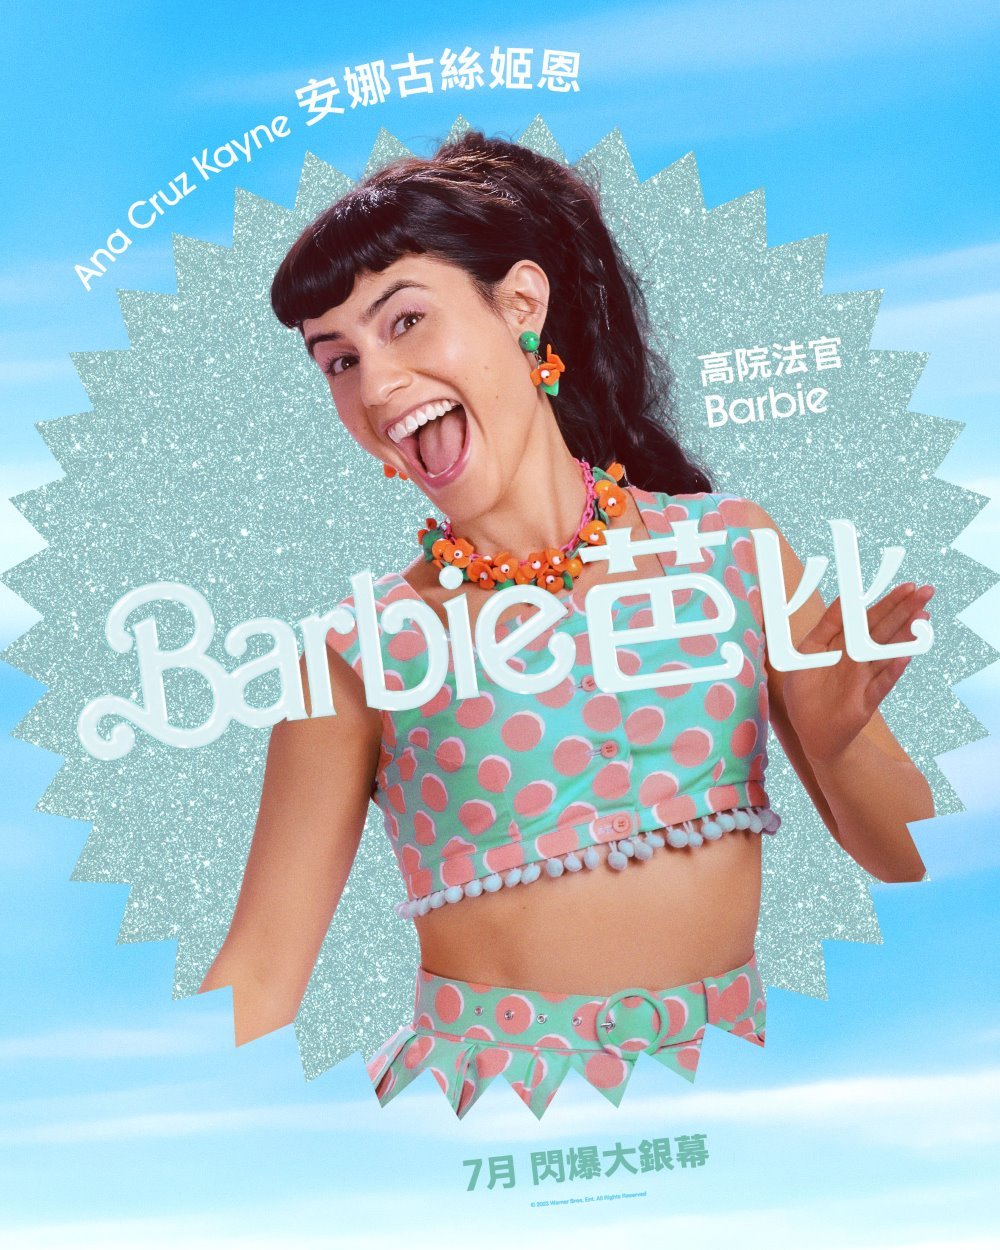 Barbie 芭比電影圖片 - HK_BARBIE_Character_ANA_CRUZ_Instavert_1638x2048_INTL_1680699858.jpg